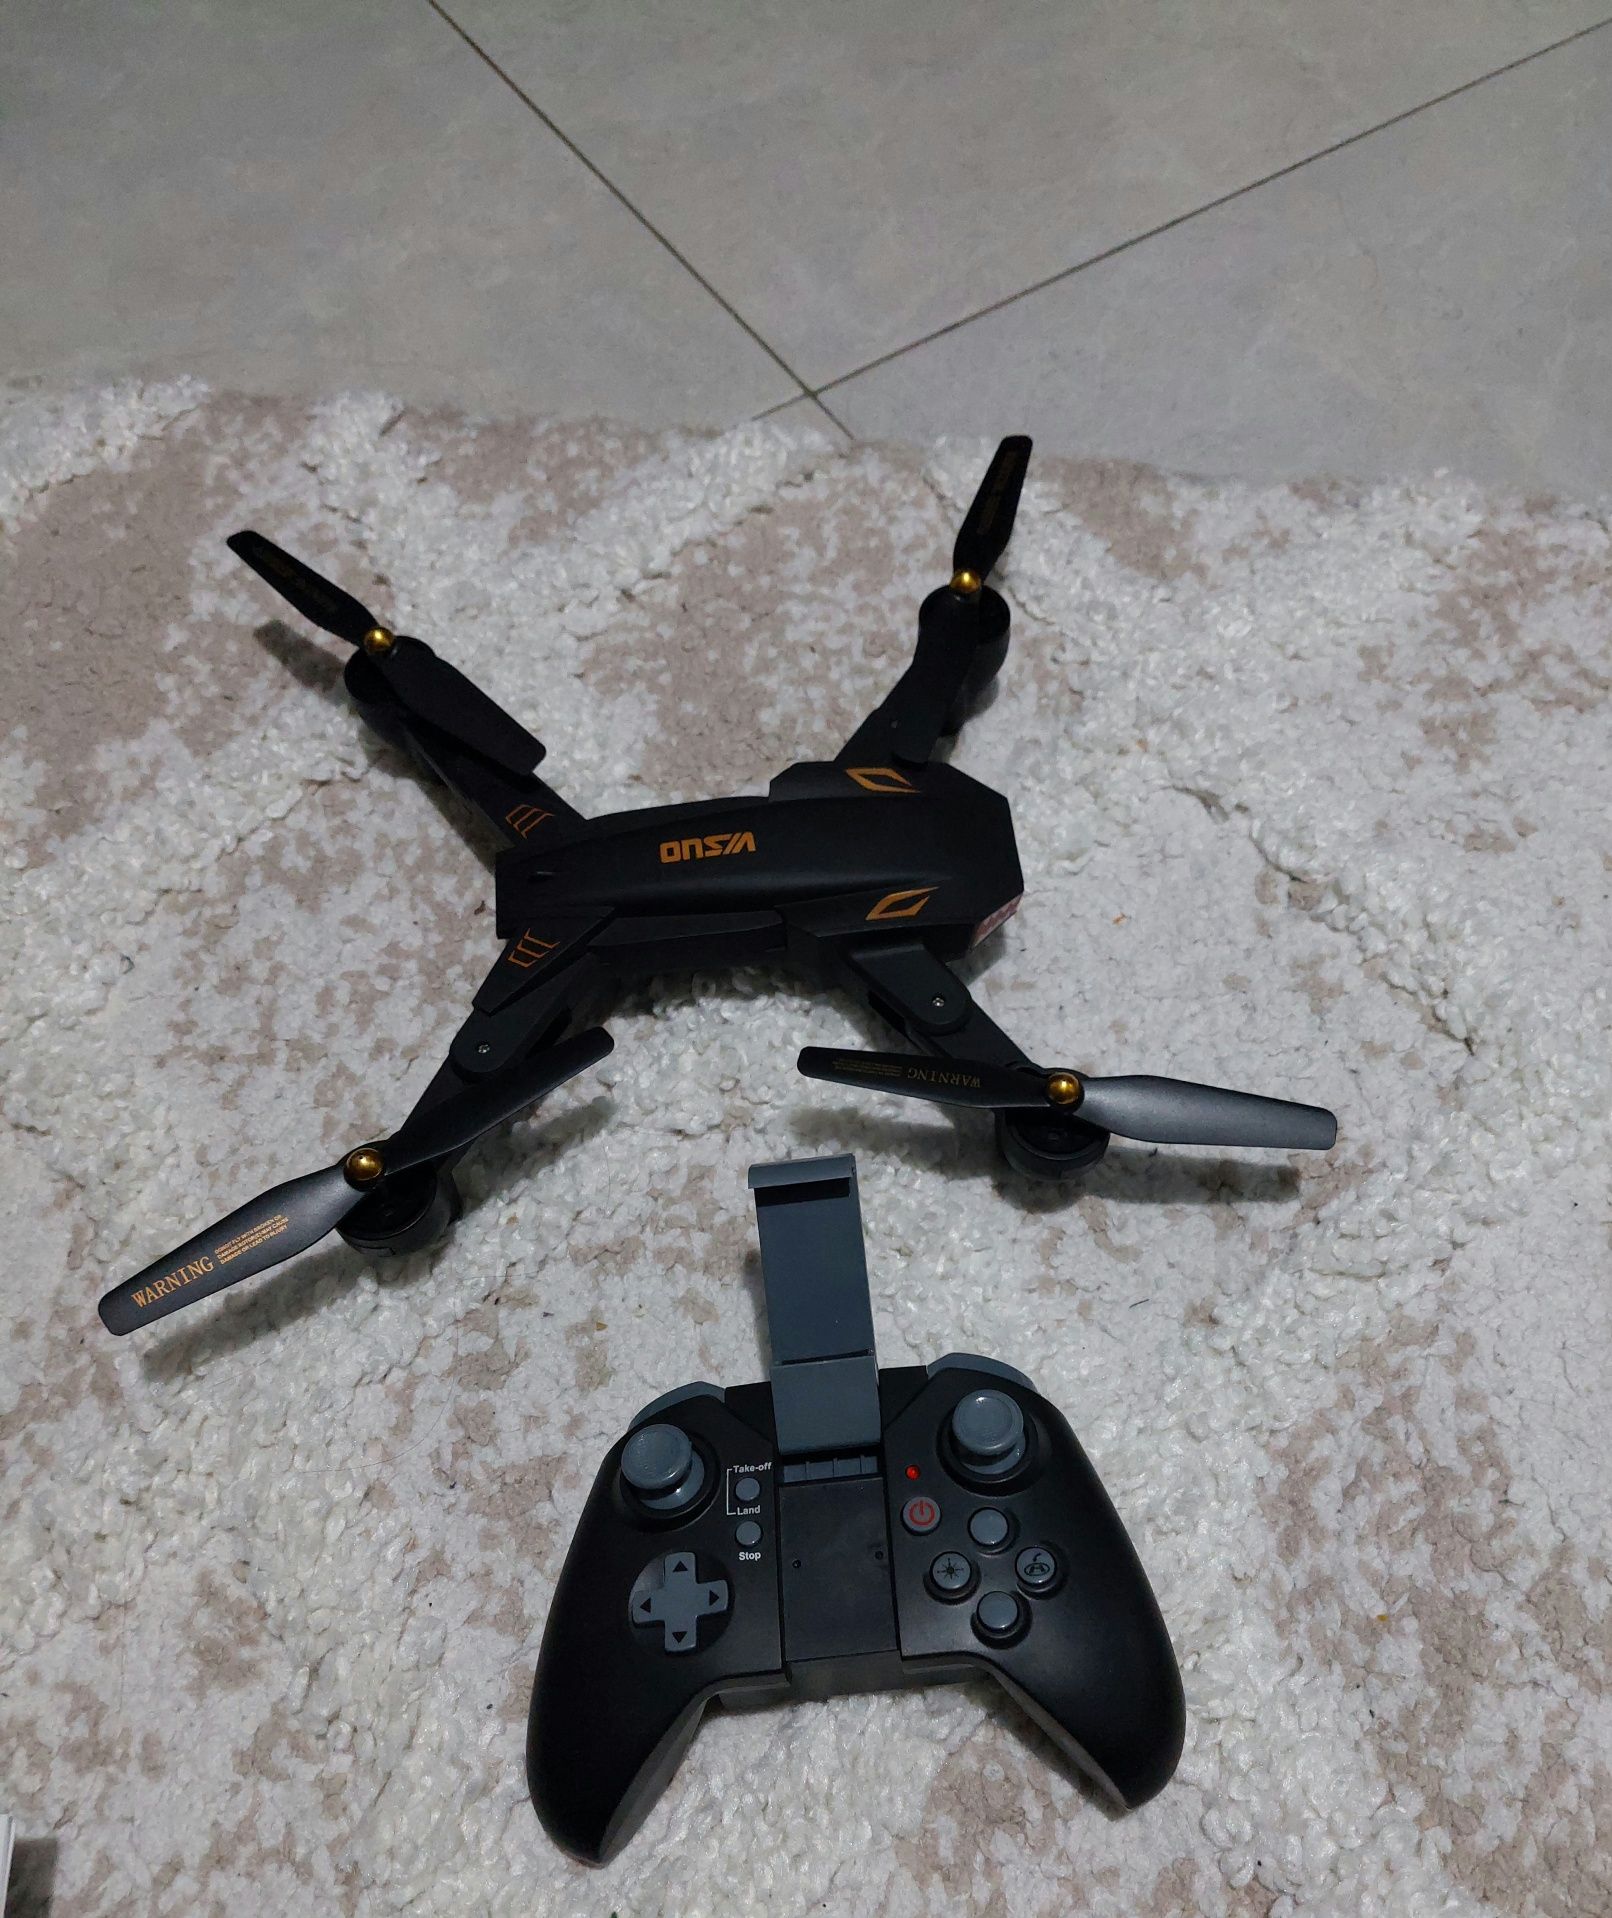 Drona pentru începători (are cameră video ce redă video pe telefon)